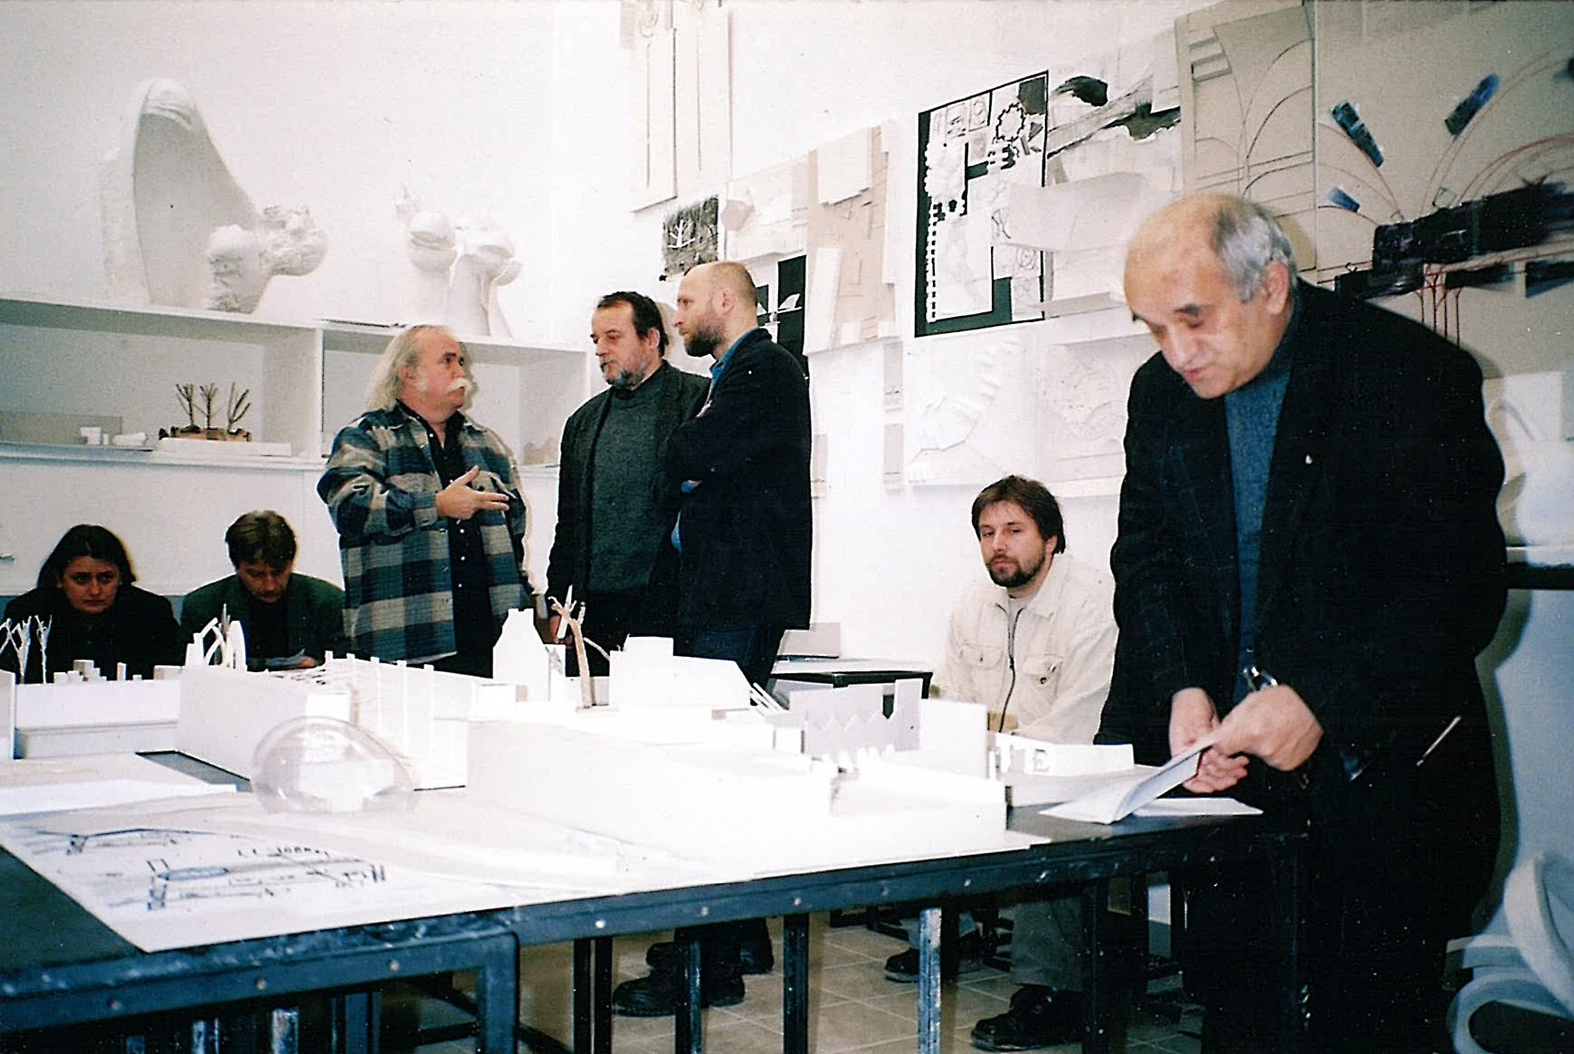 Pracownia projektowania architektoniczno-rzeźbiarskiego ASP w Krakowie 2004 r.